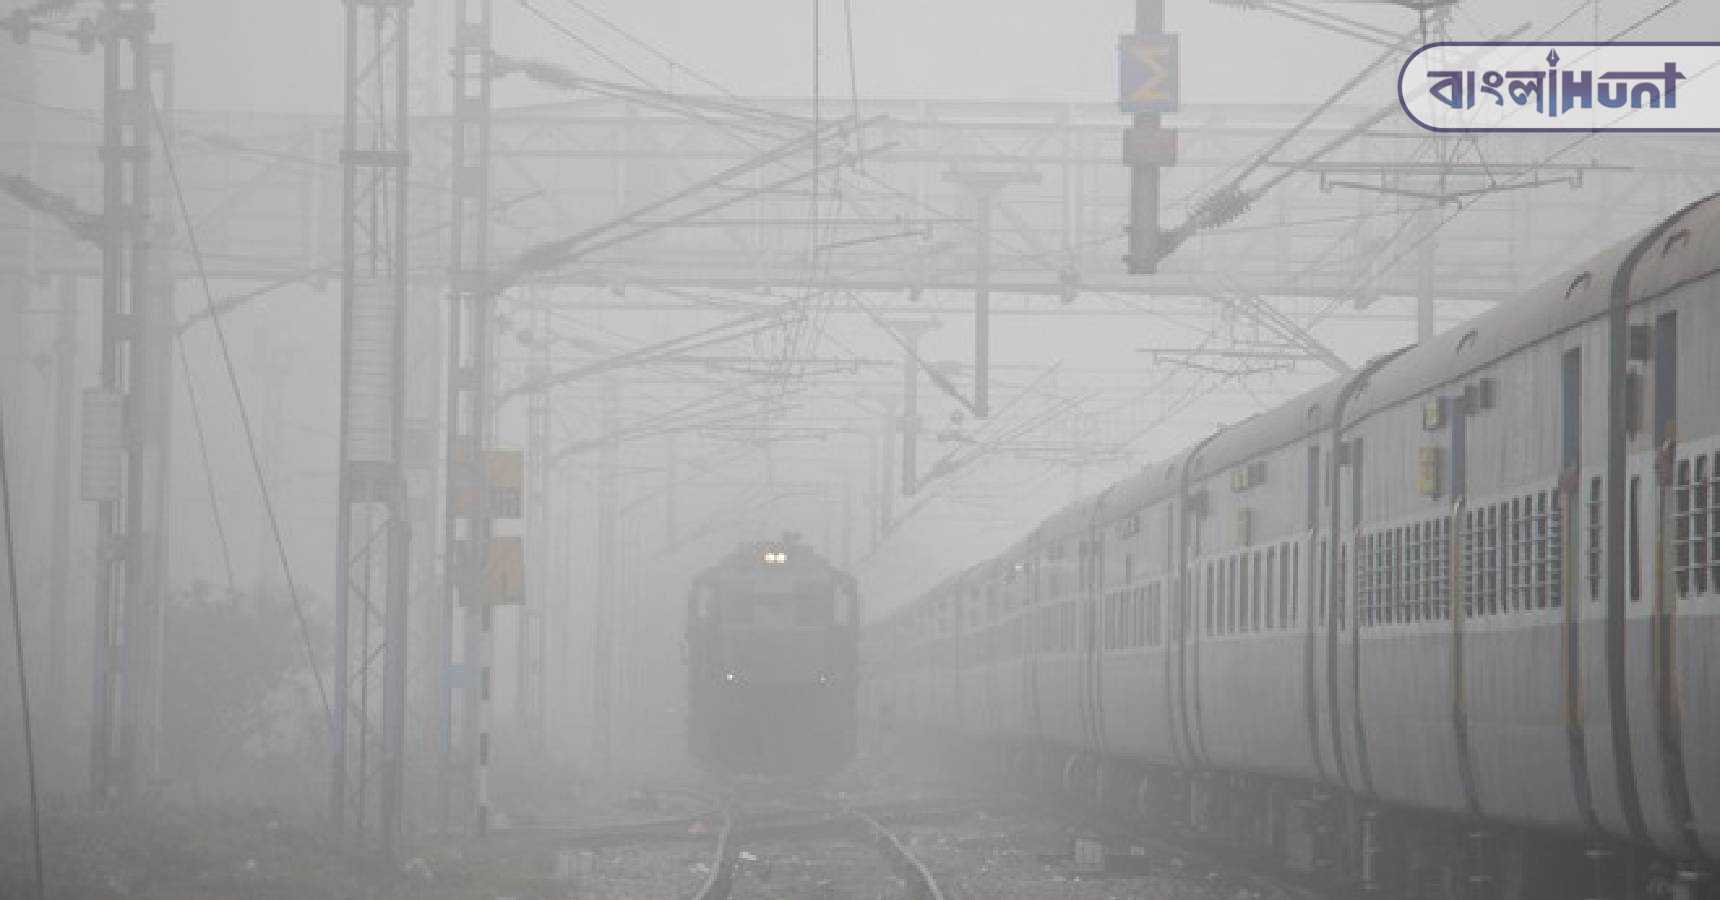 indian railways train fog